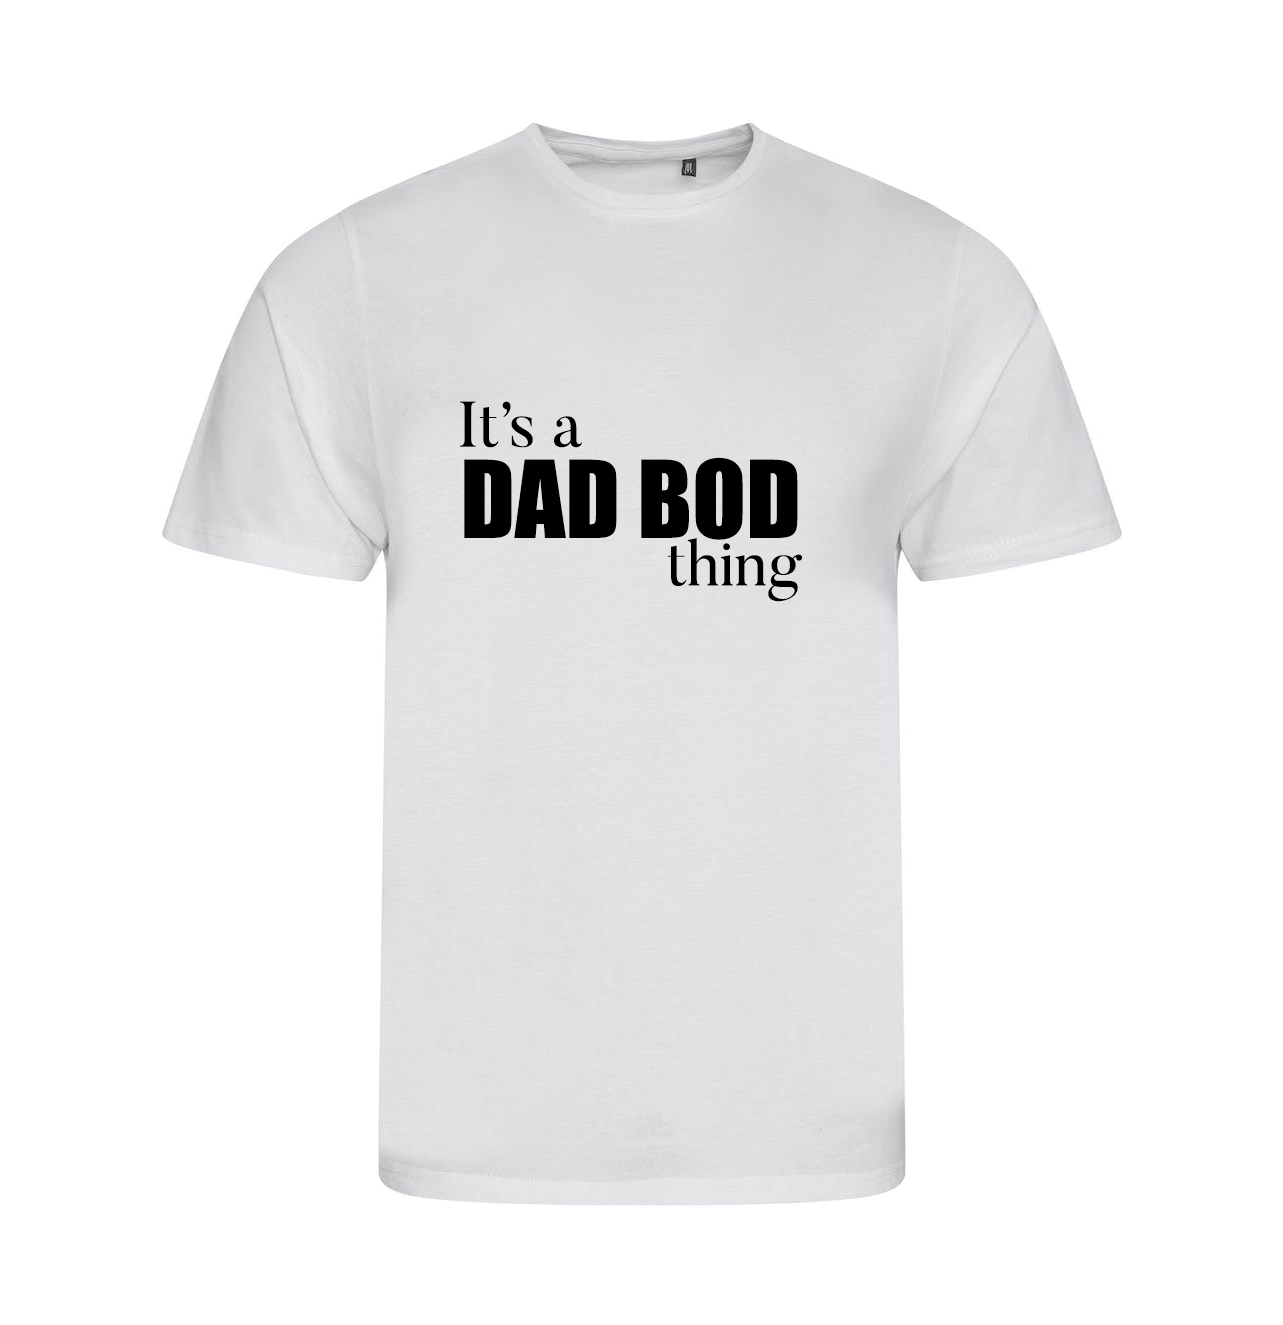 "DAD BOD" Tee